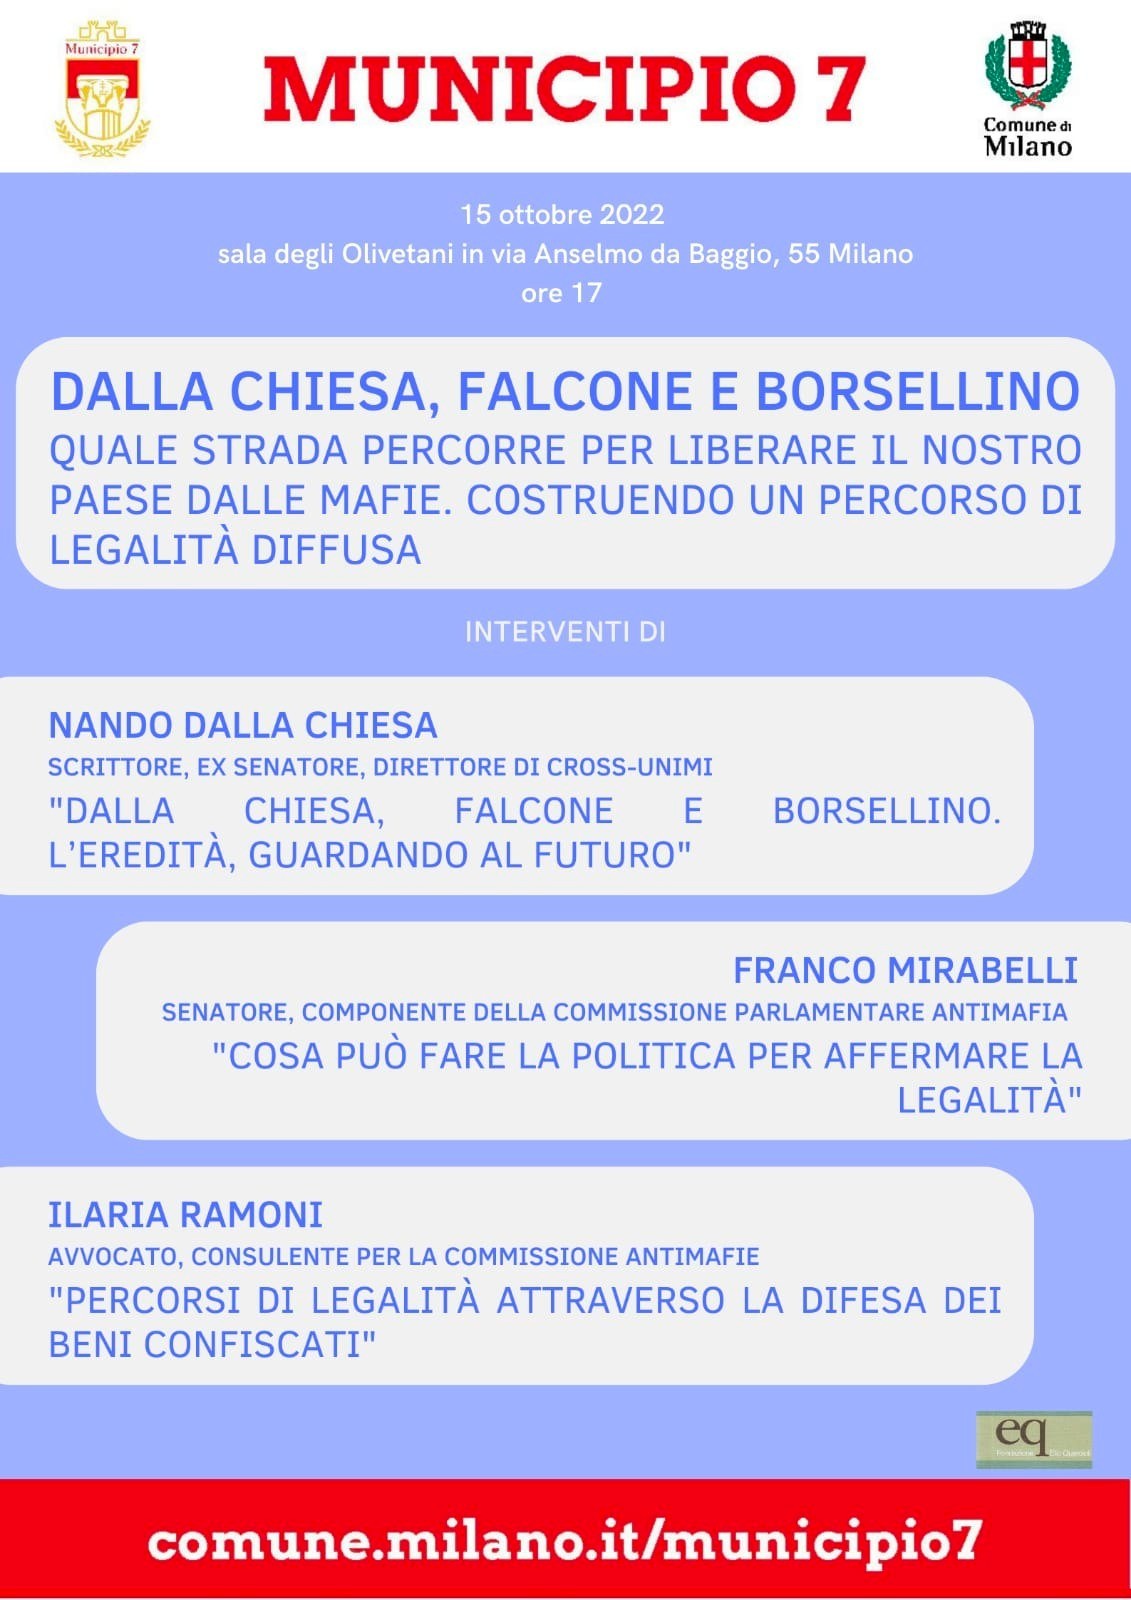 Falcone Borsellino evento